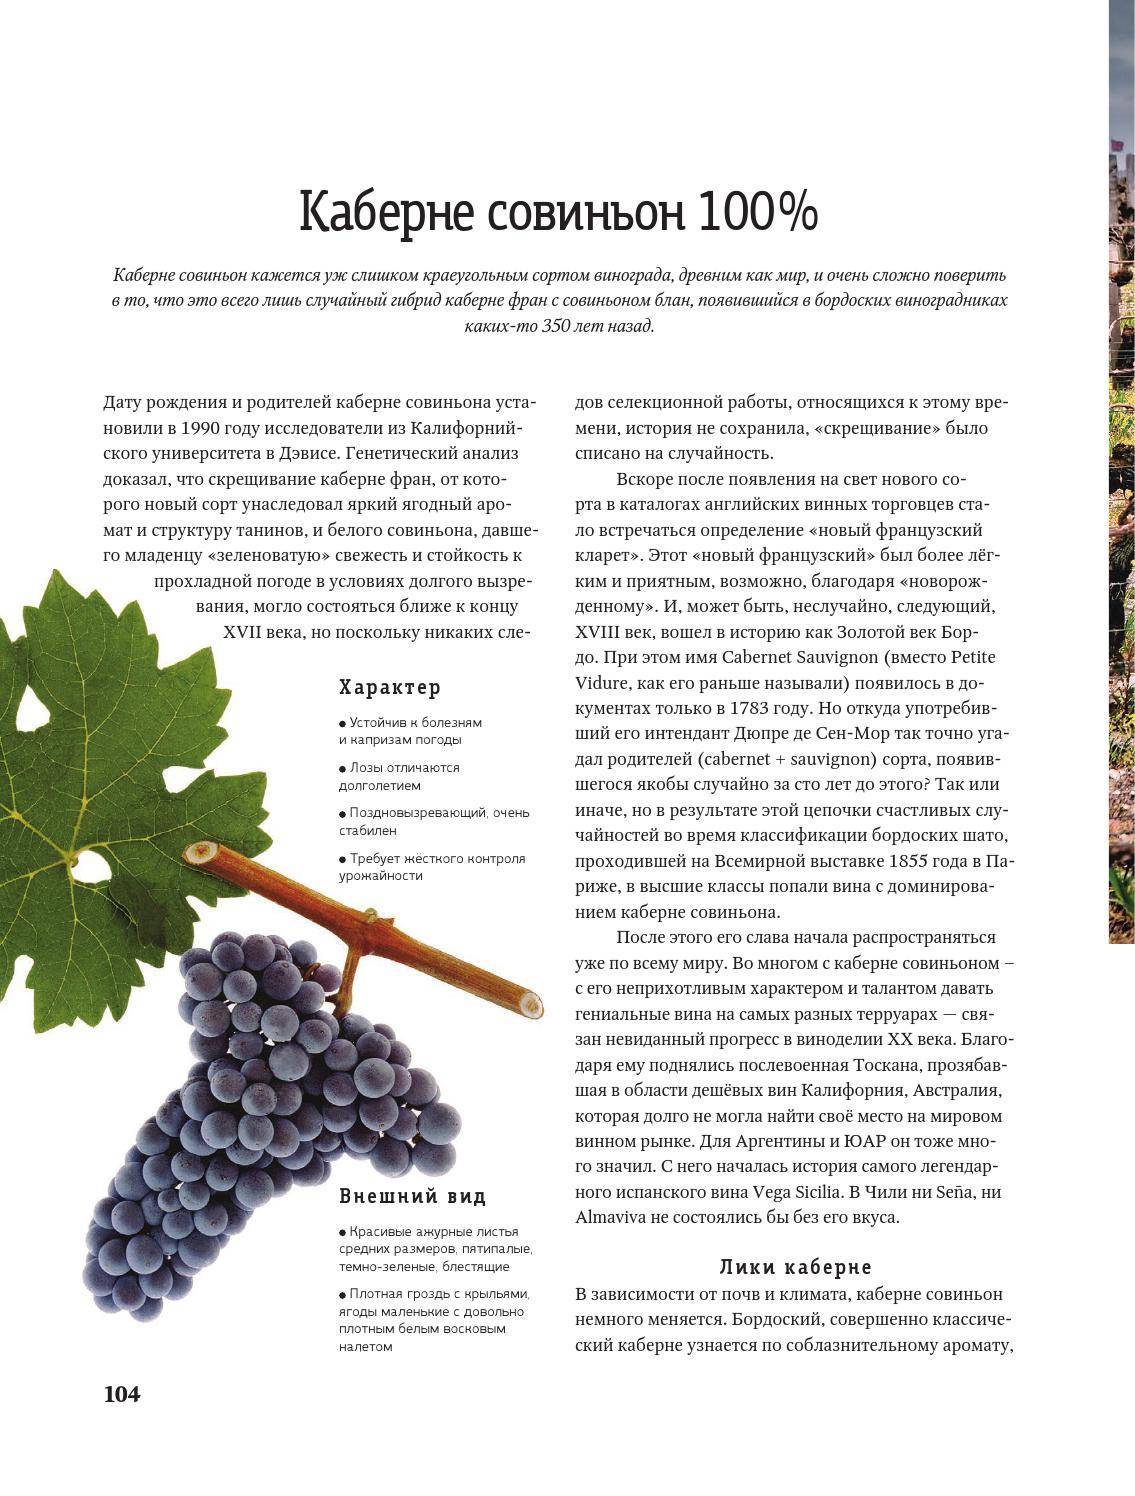 Лучшие винные сорта винограда: фото и описание, характеристики, для вина, виноделия, в россии, саженцы, черные, красные технические